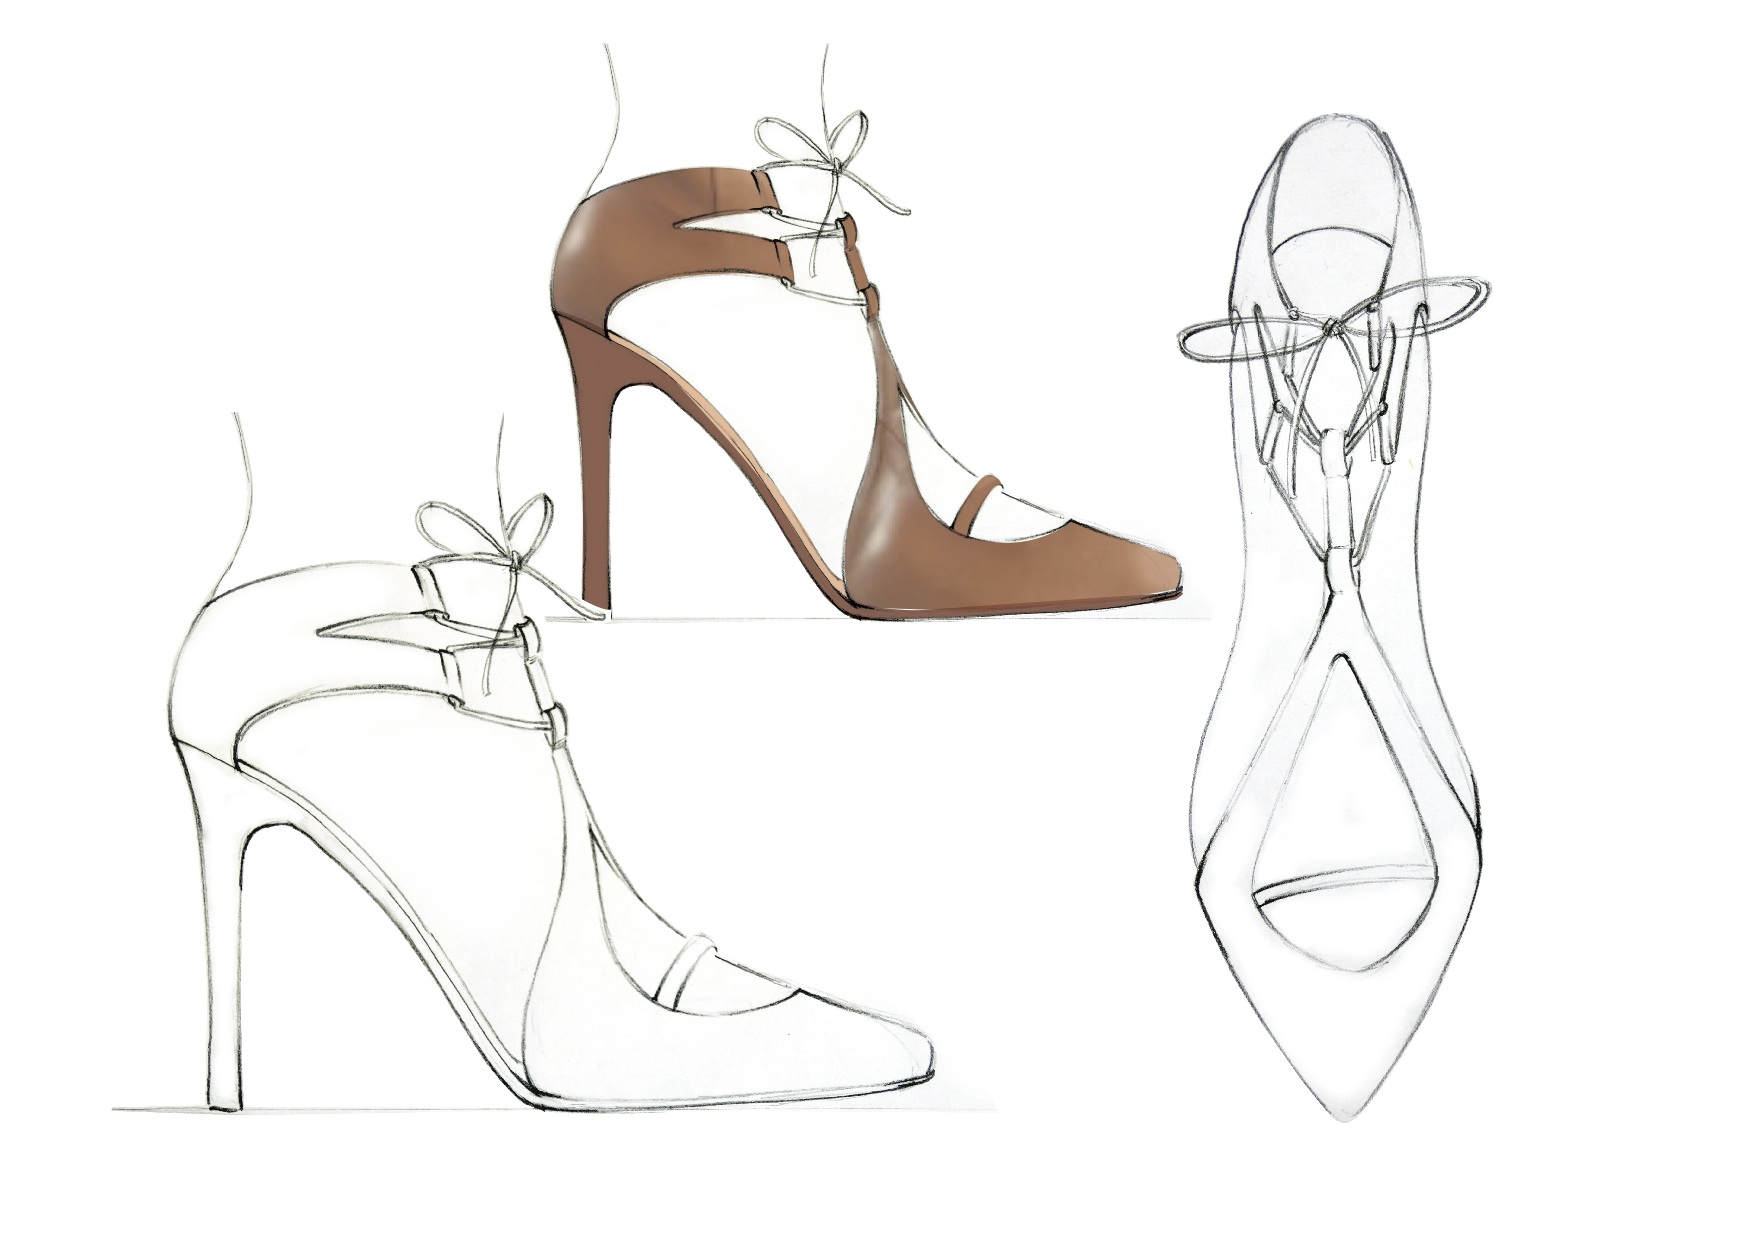 footwear designer jobs